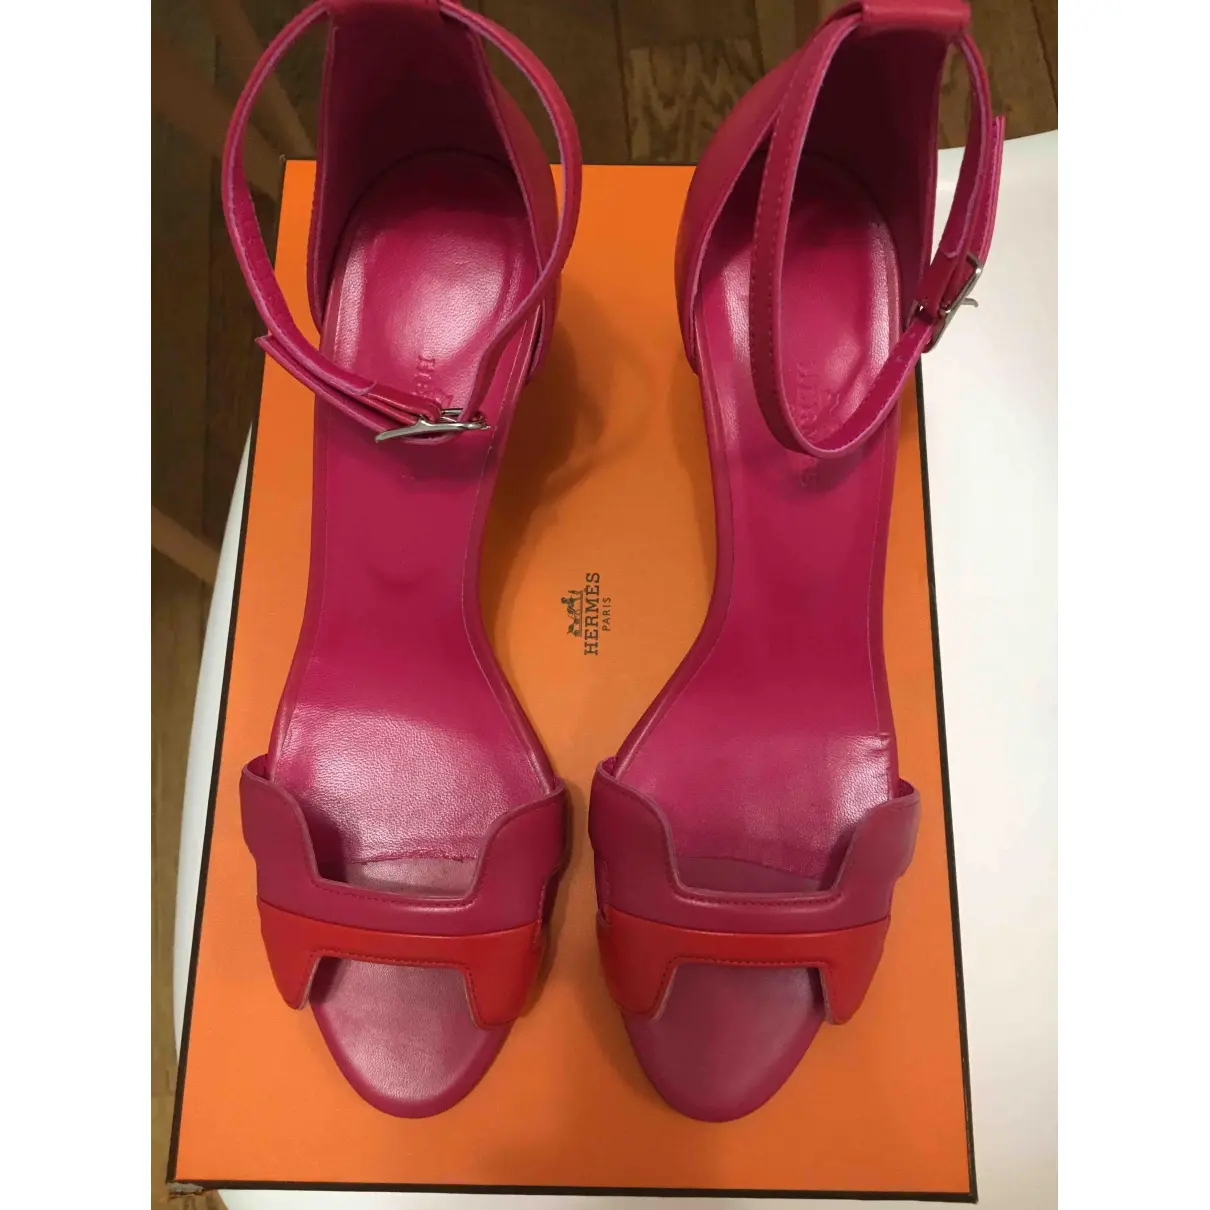 Buy Hermès Première leather sandals online